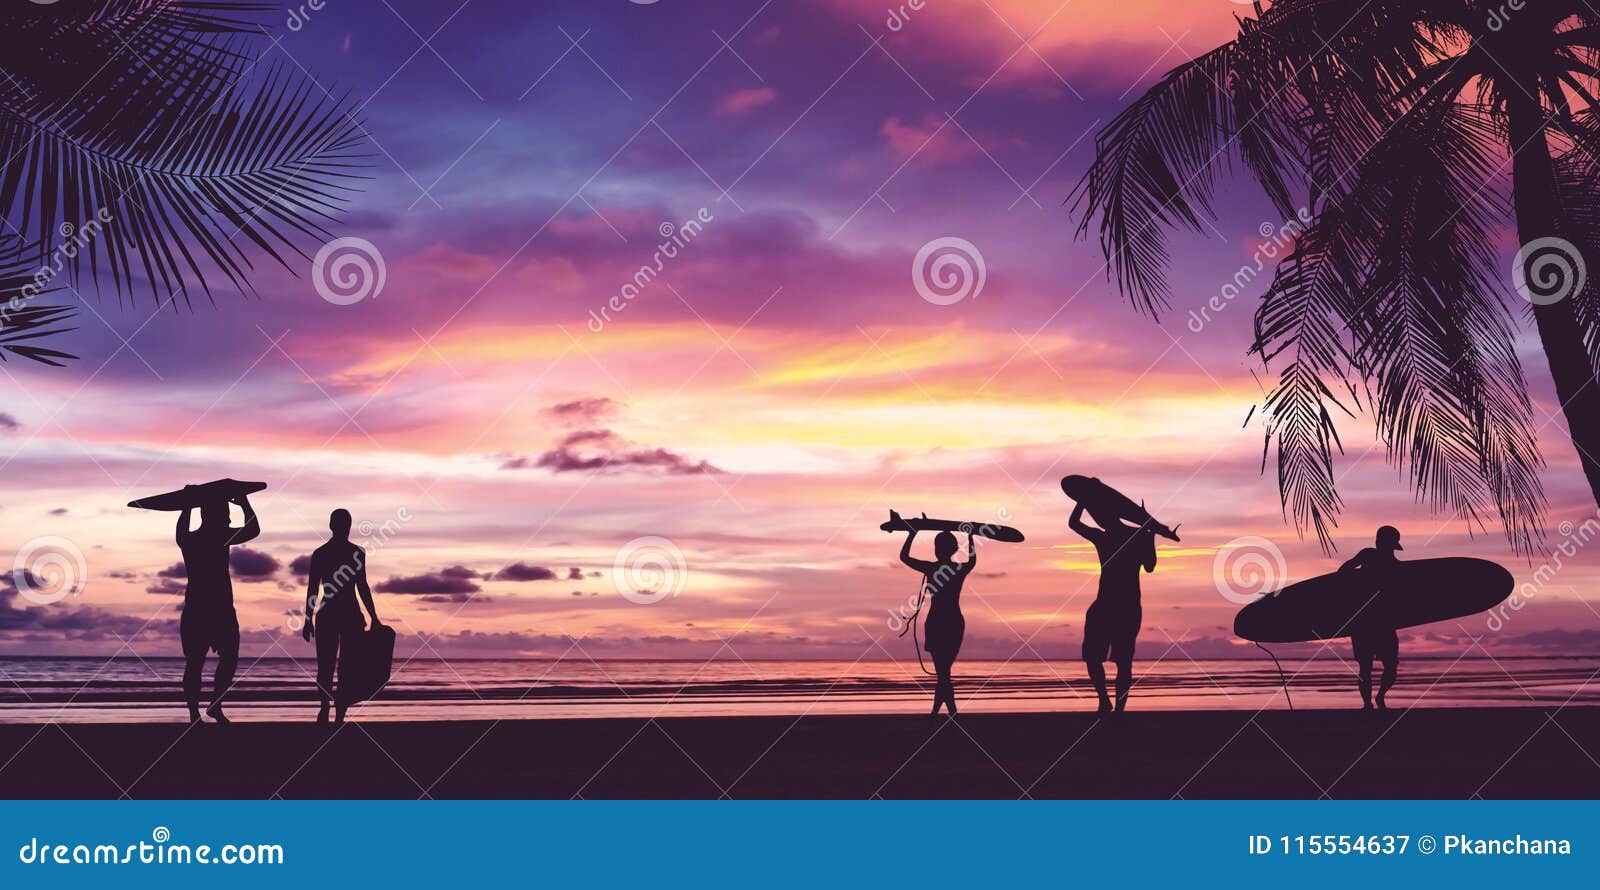 Silueta de la tabla hawaiana que lleva de la gente de la persona que practica surf. Silueta de la gente de la persona que practica surf que lleva sus tablas hawaianas en la playa de la puesta del sol r